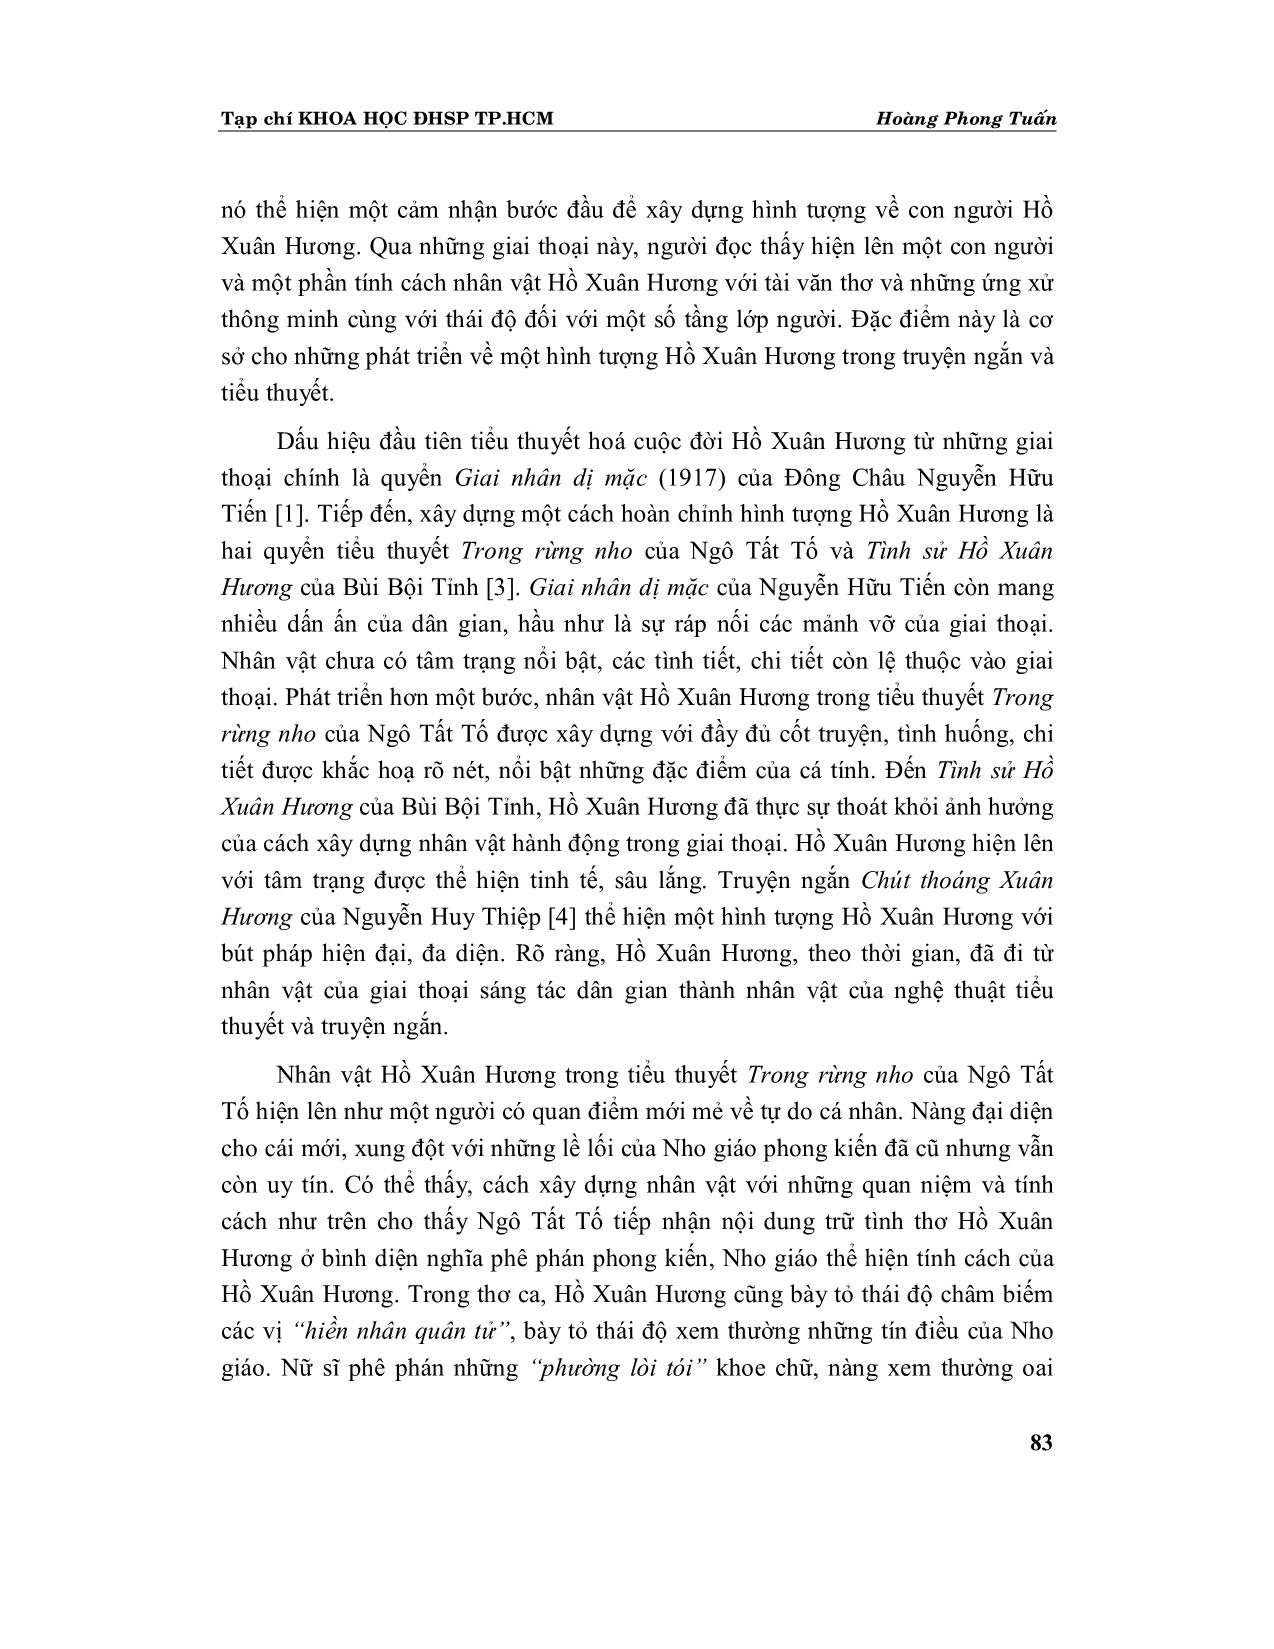 Tiếp nhận thơ Nôm Hồ Xuân Hương trong sáng tác nghệ thuật (Tiểu thuyết, truyện ngắn, hội hoạ) trang 2